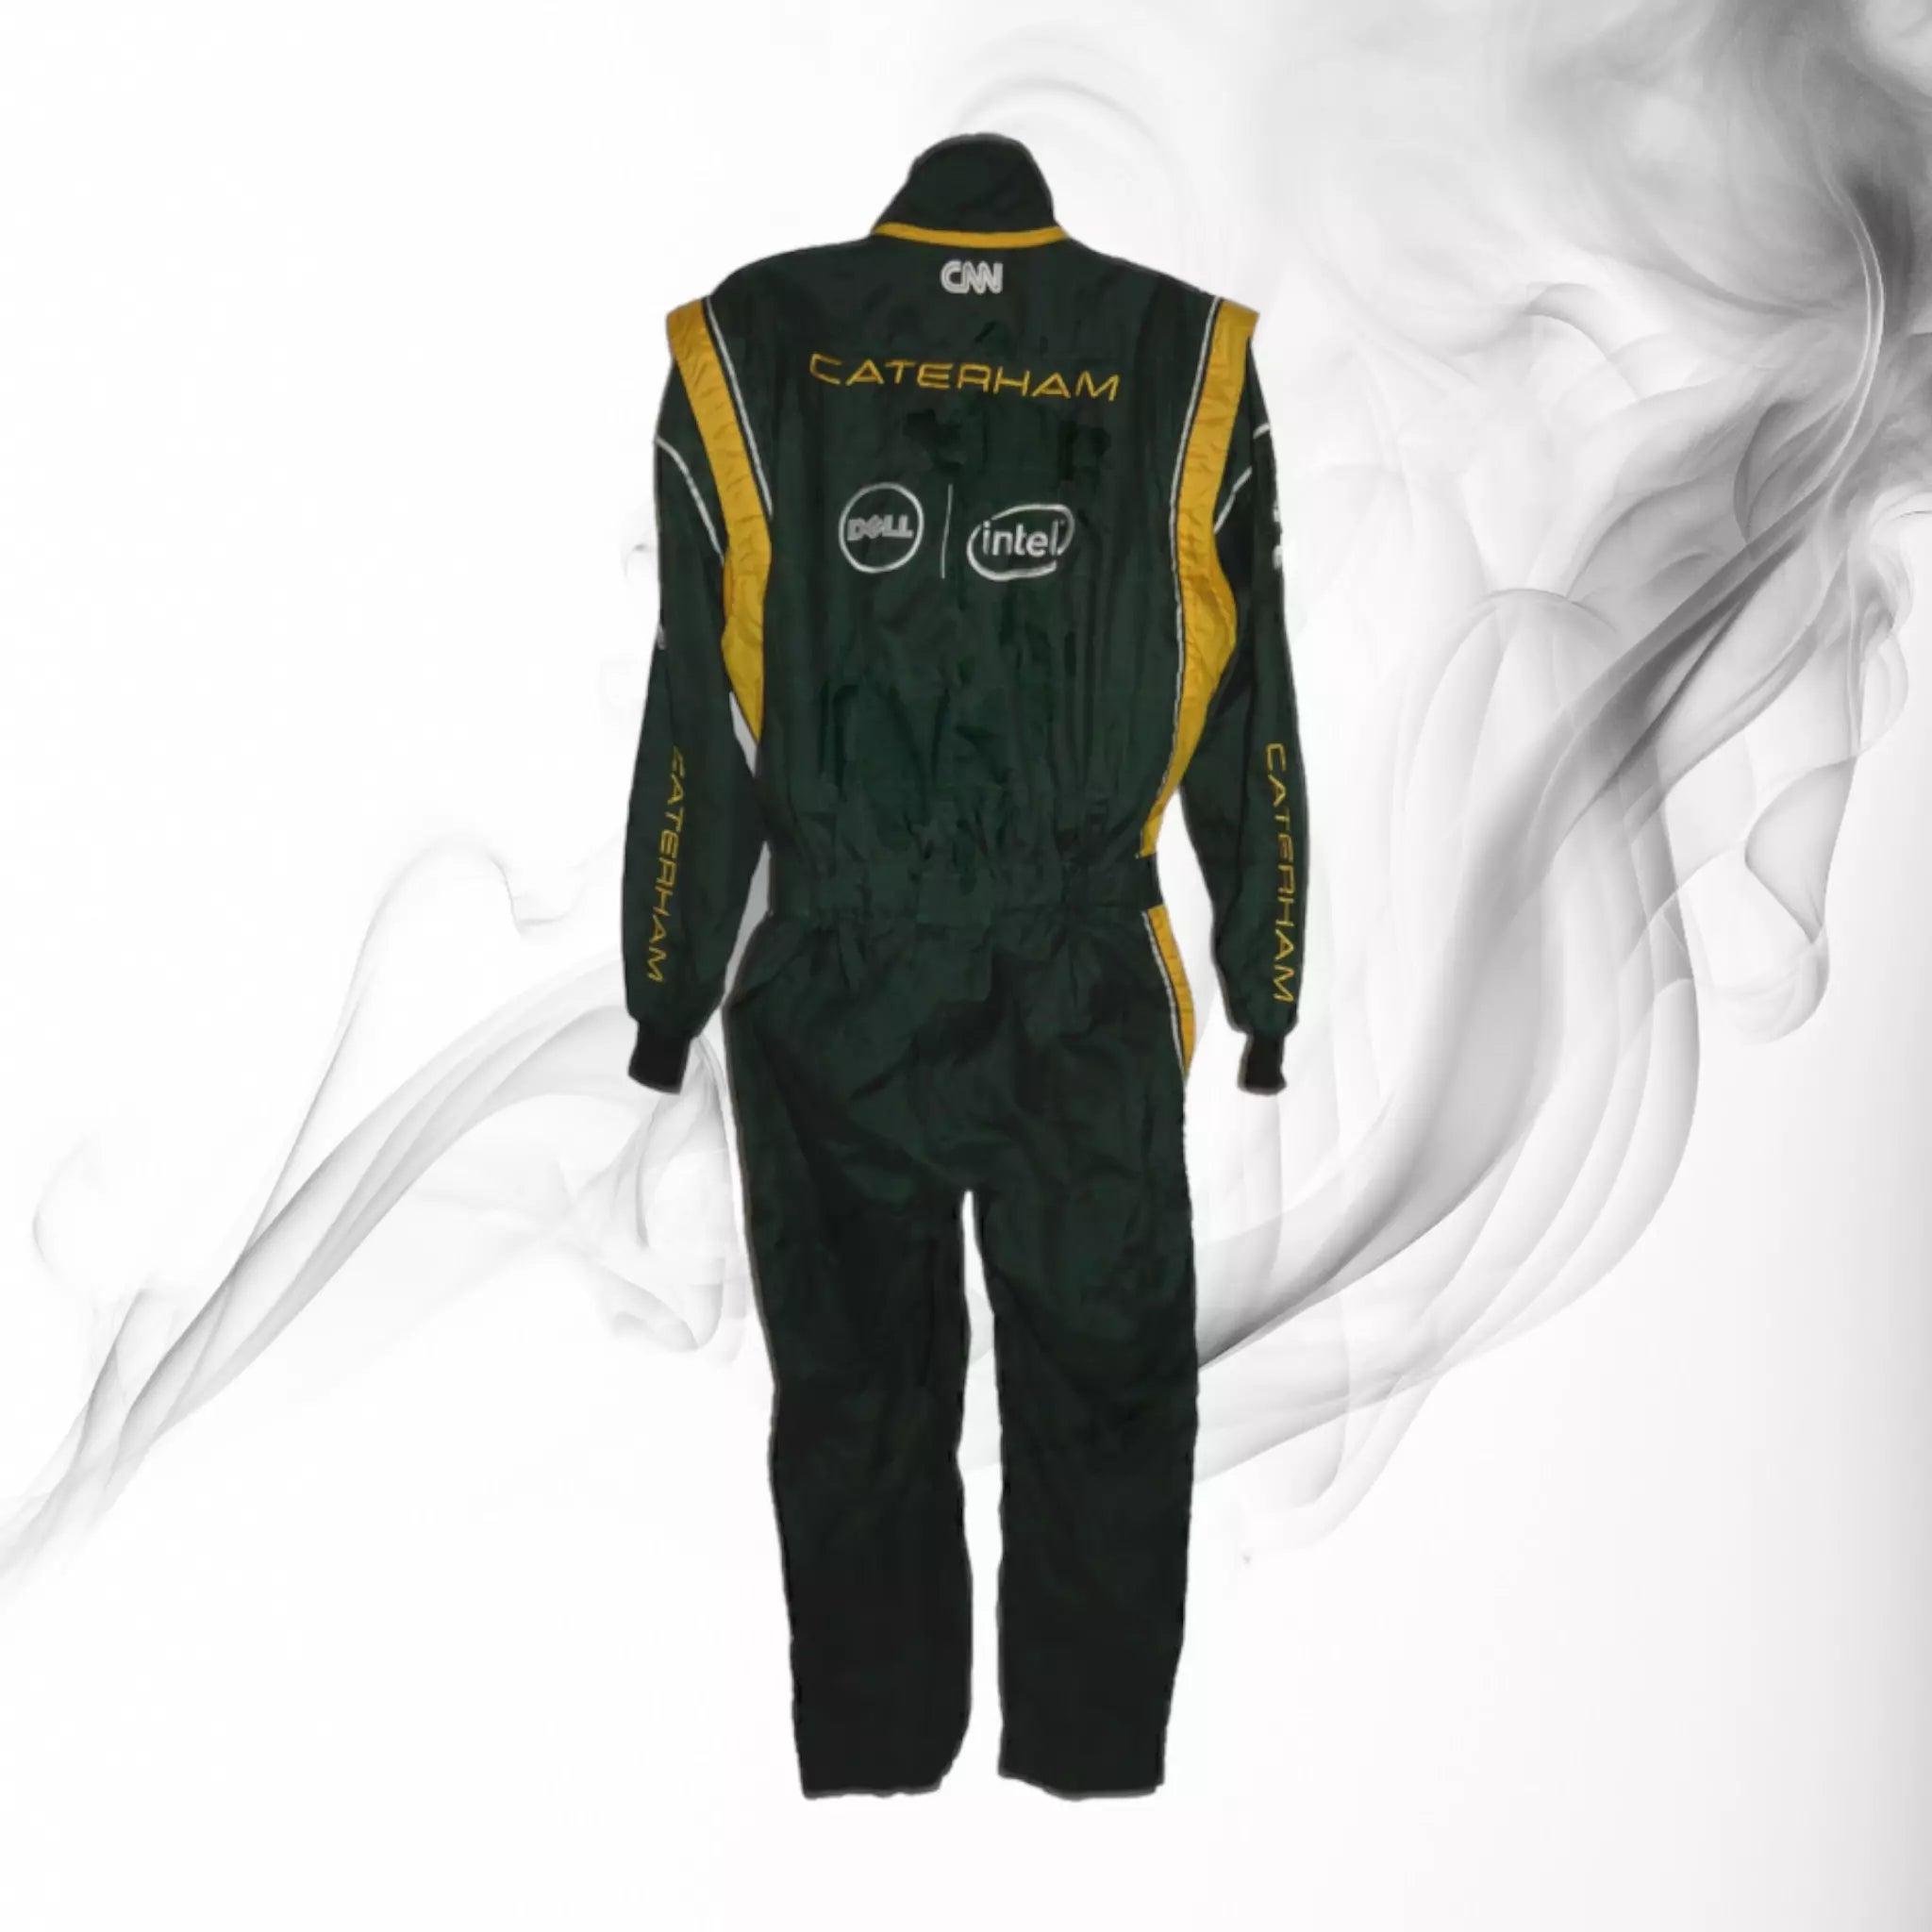 Caterham F1 2012 pit crew suit - Dash Racegear 